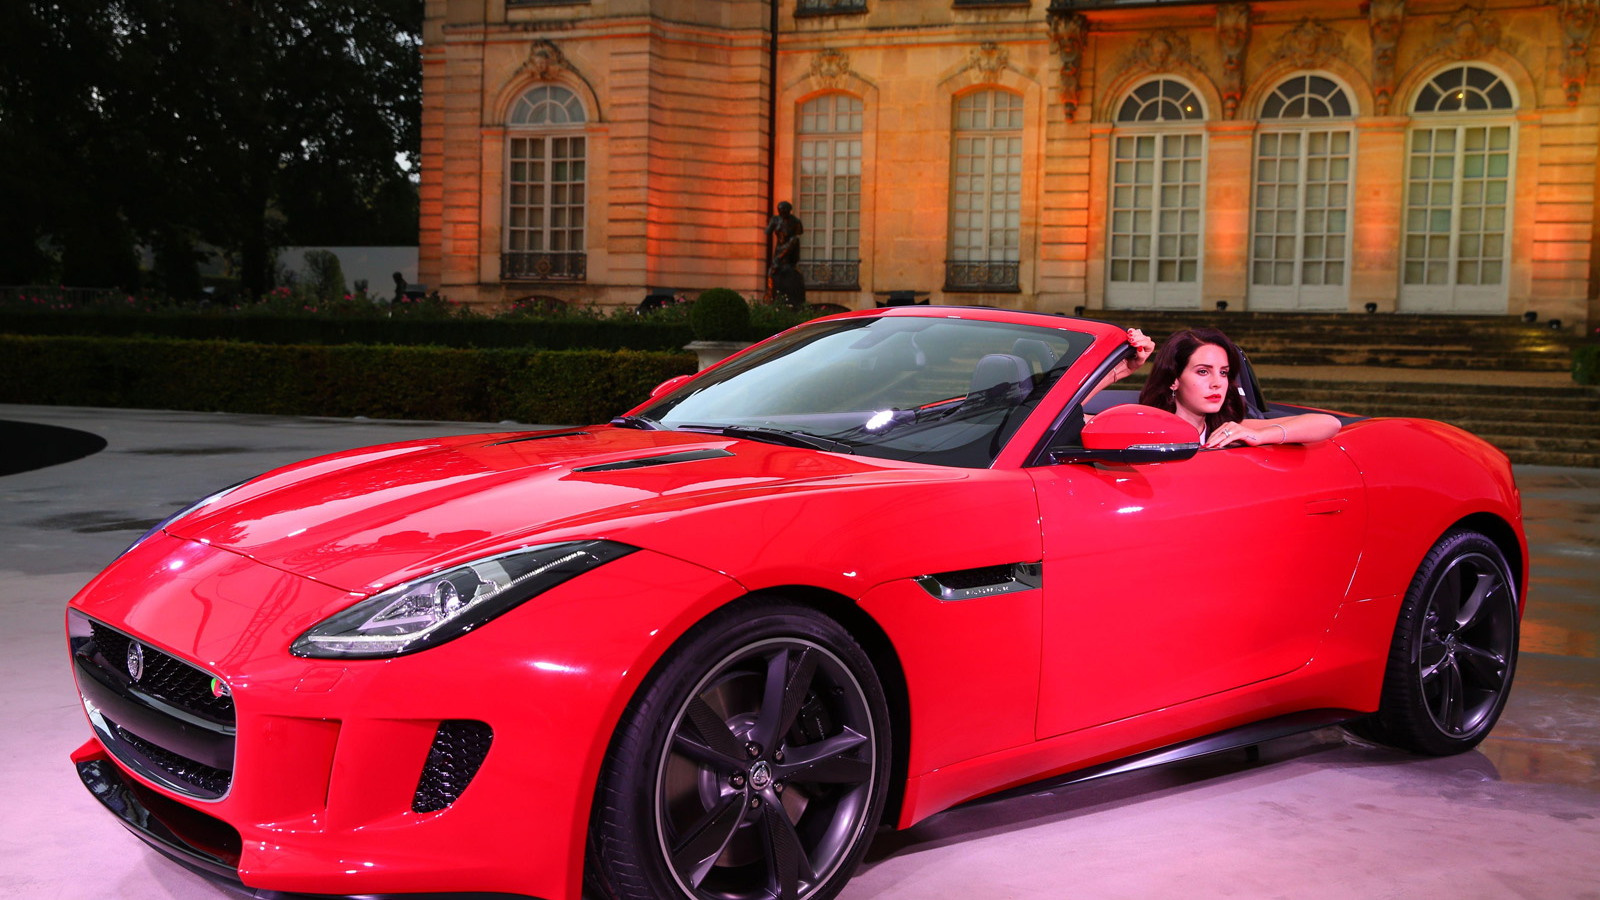 Lana Del Rey and the 2014 Jaguar F-Type